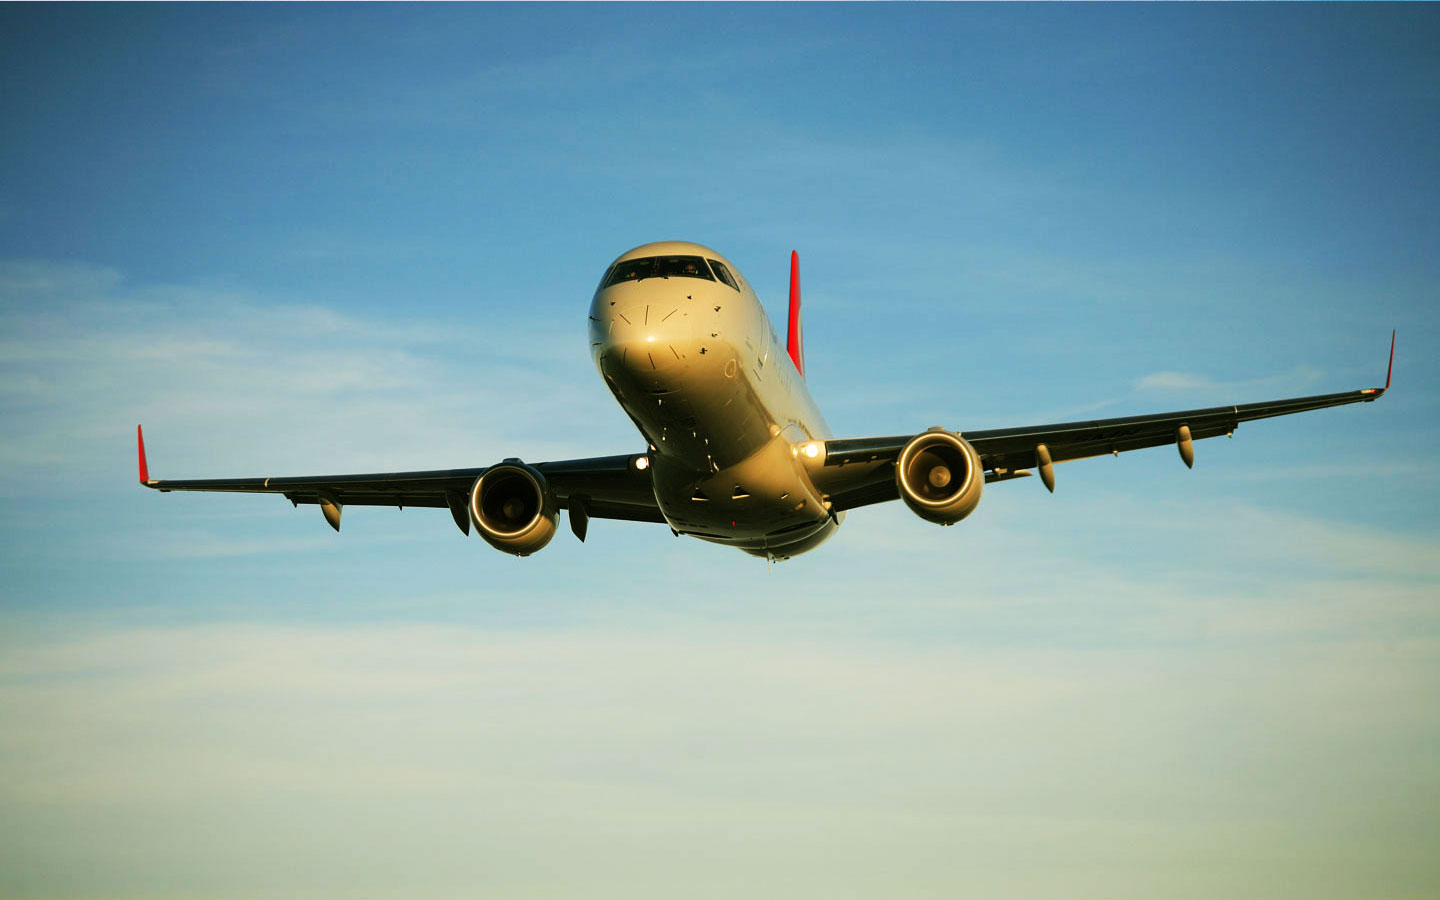 AA Group faz acordo com Embraer para pedido de jatos